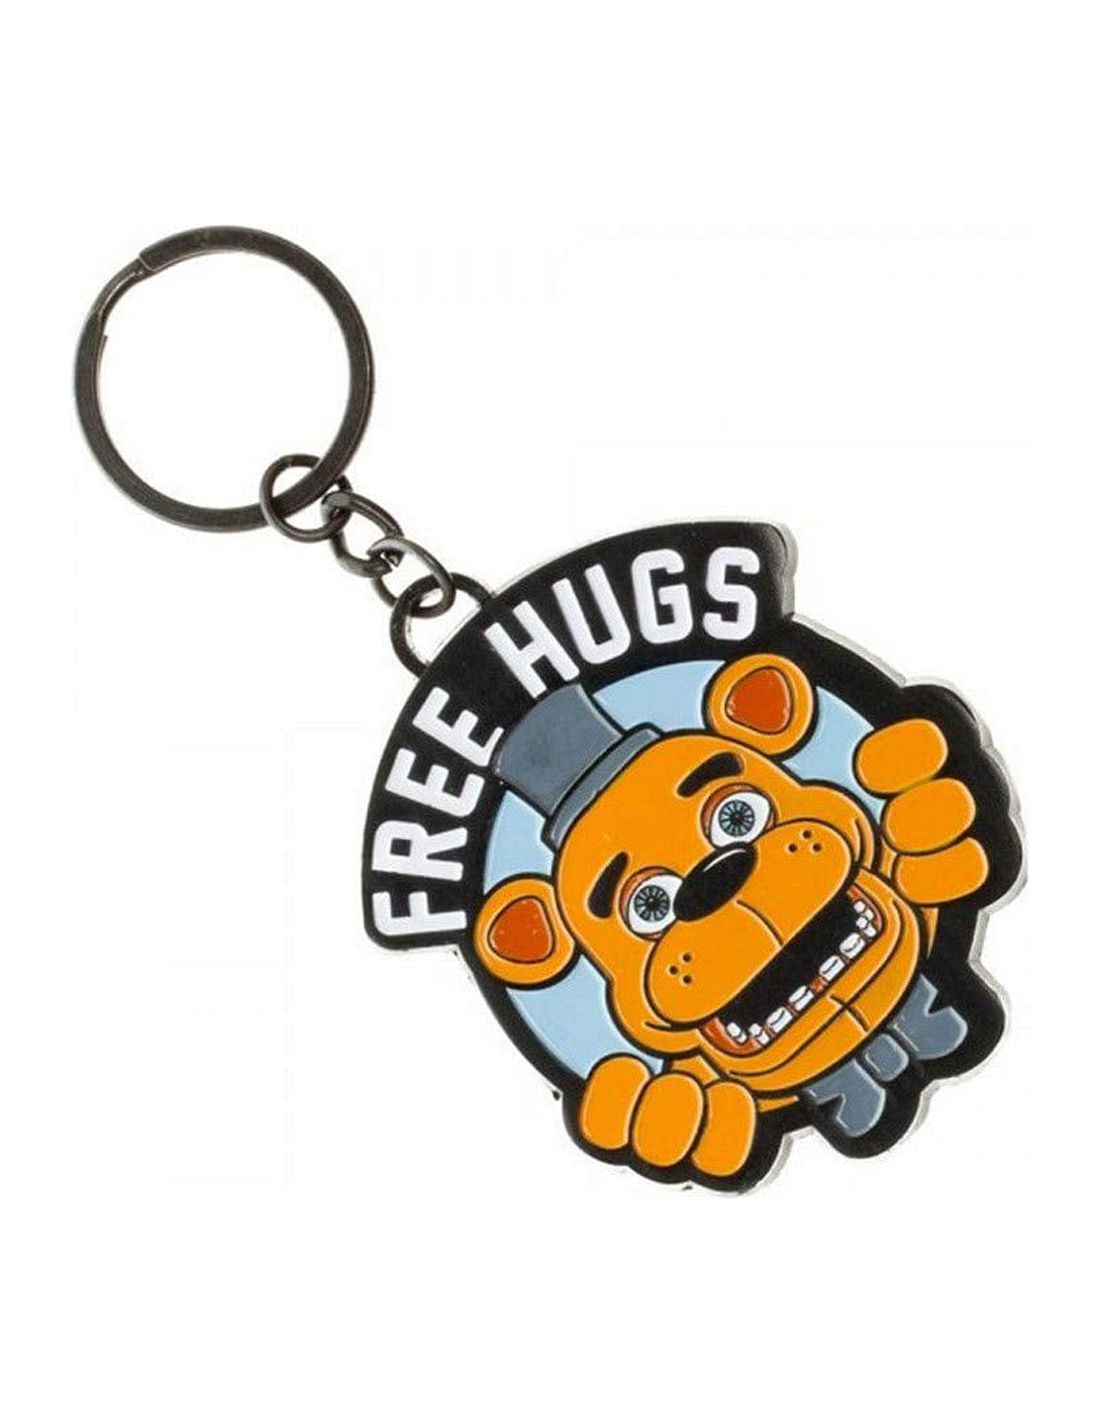 Five Nights at Freddys Free Hugs Freddy Fazbear Keychain 